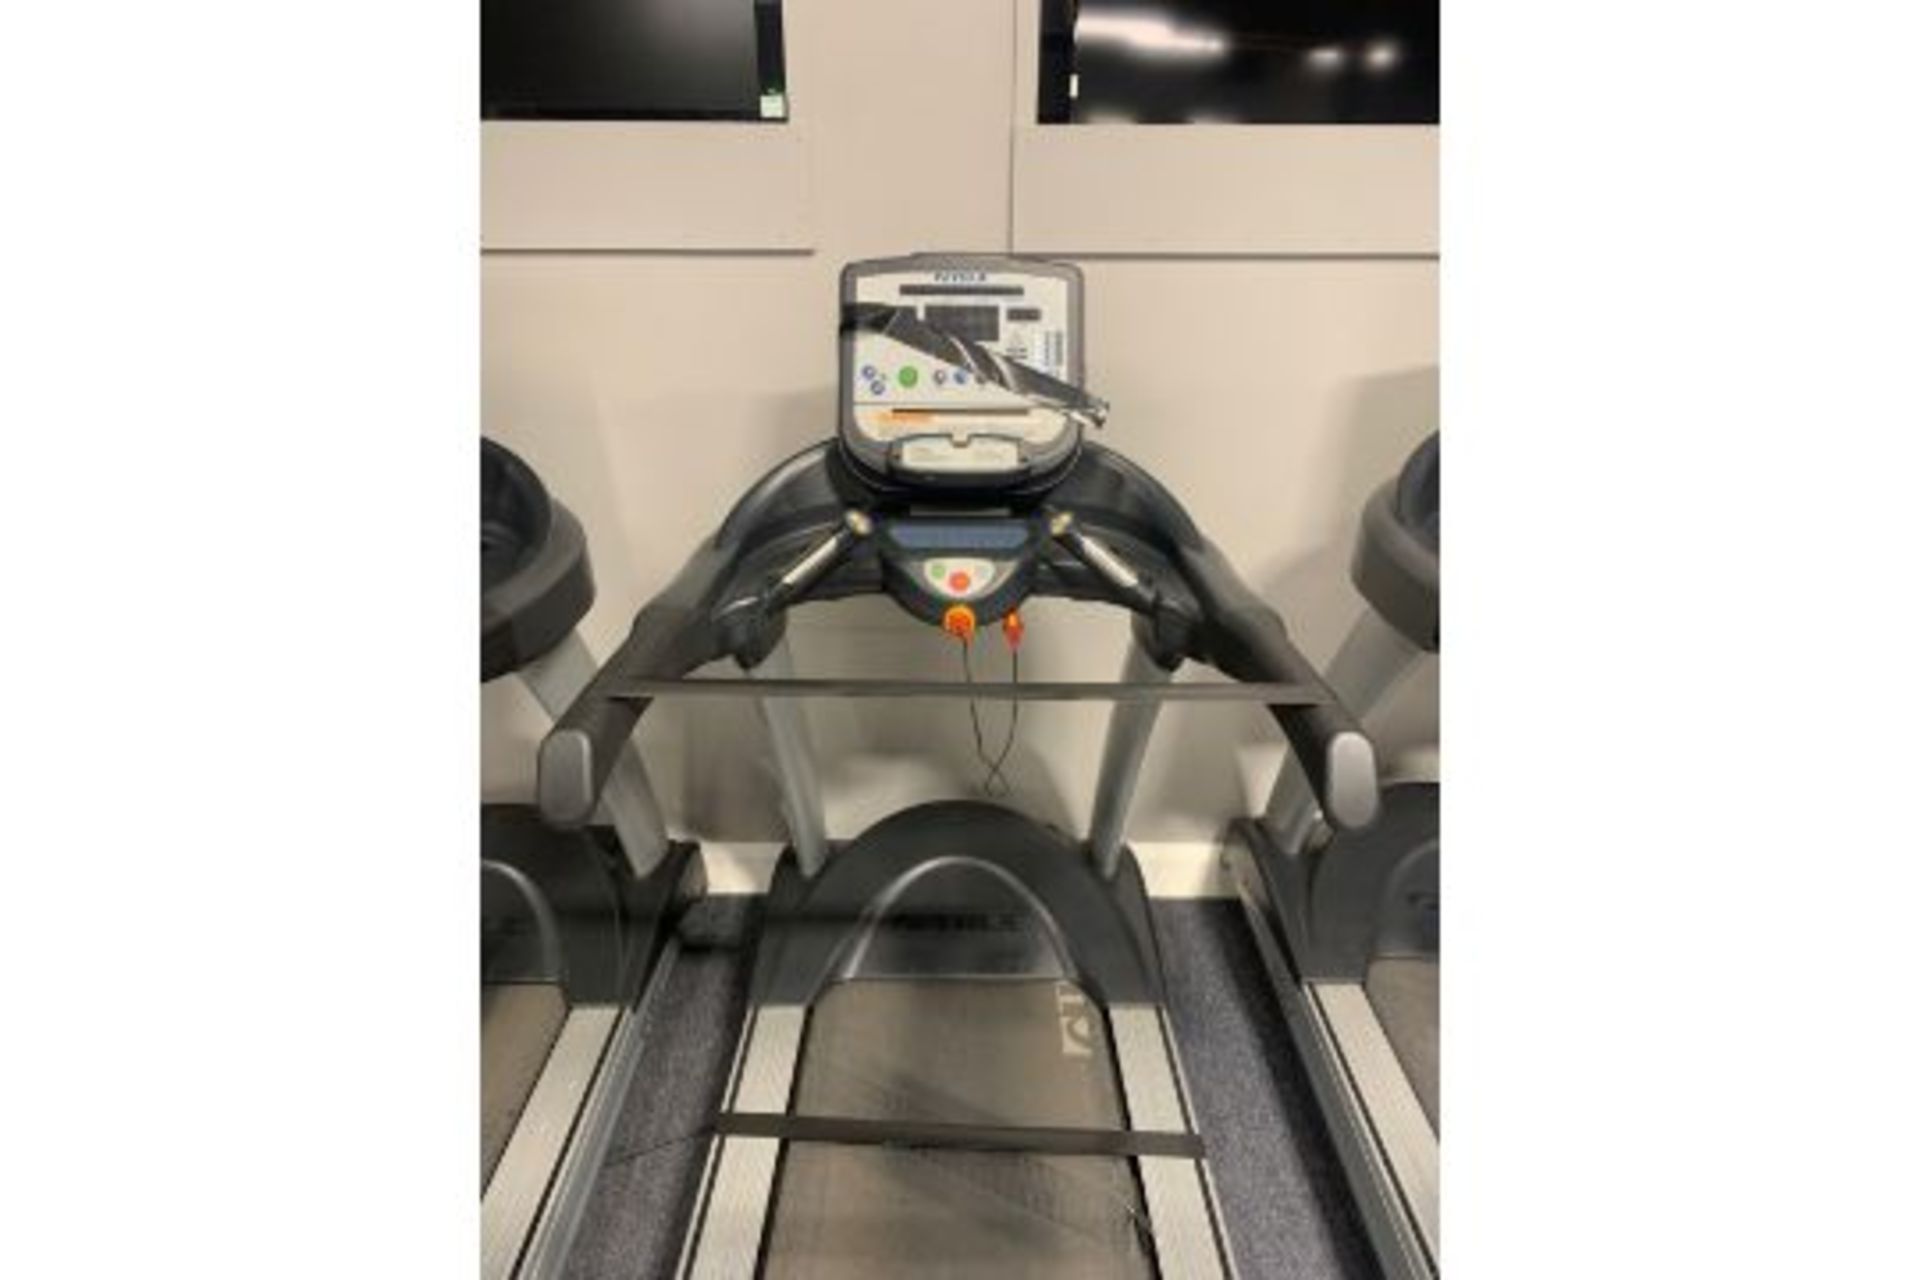 True Fitness 650 Treadmill - Image 2 of 3